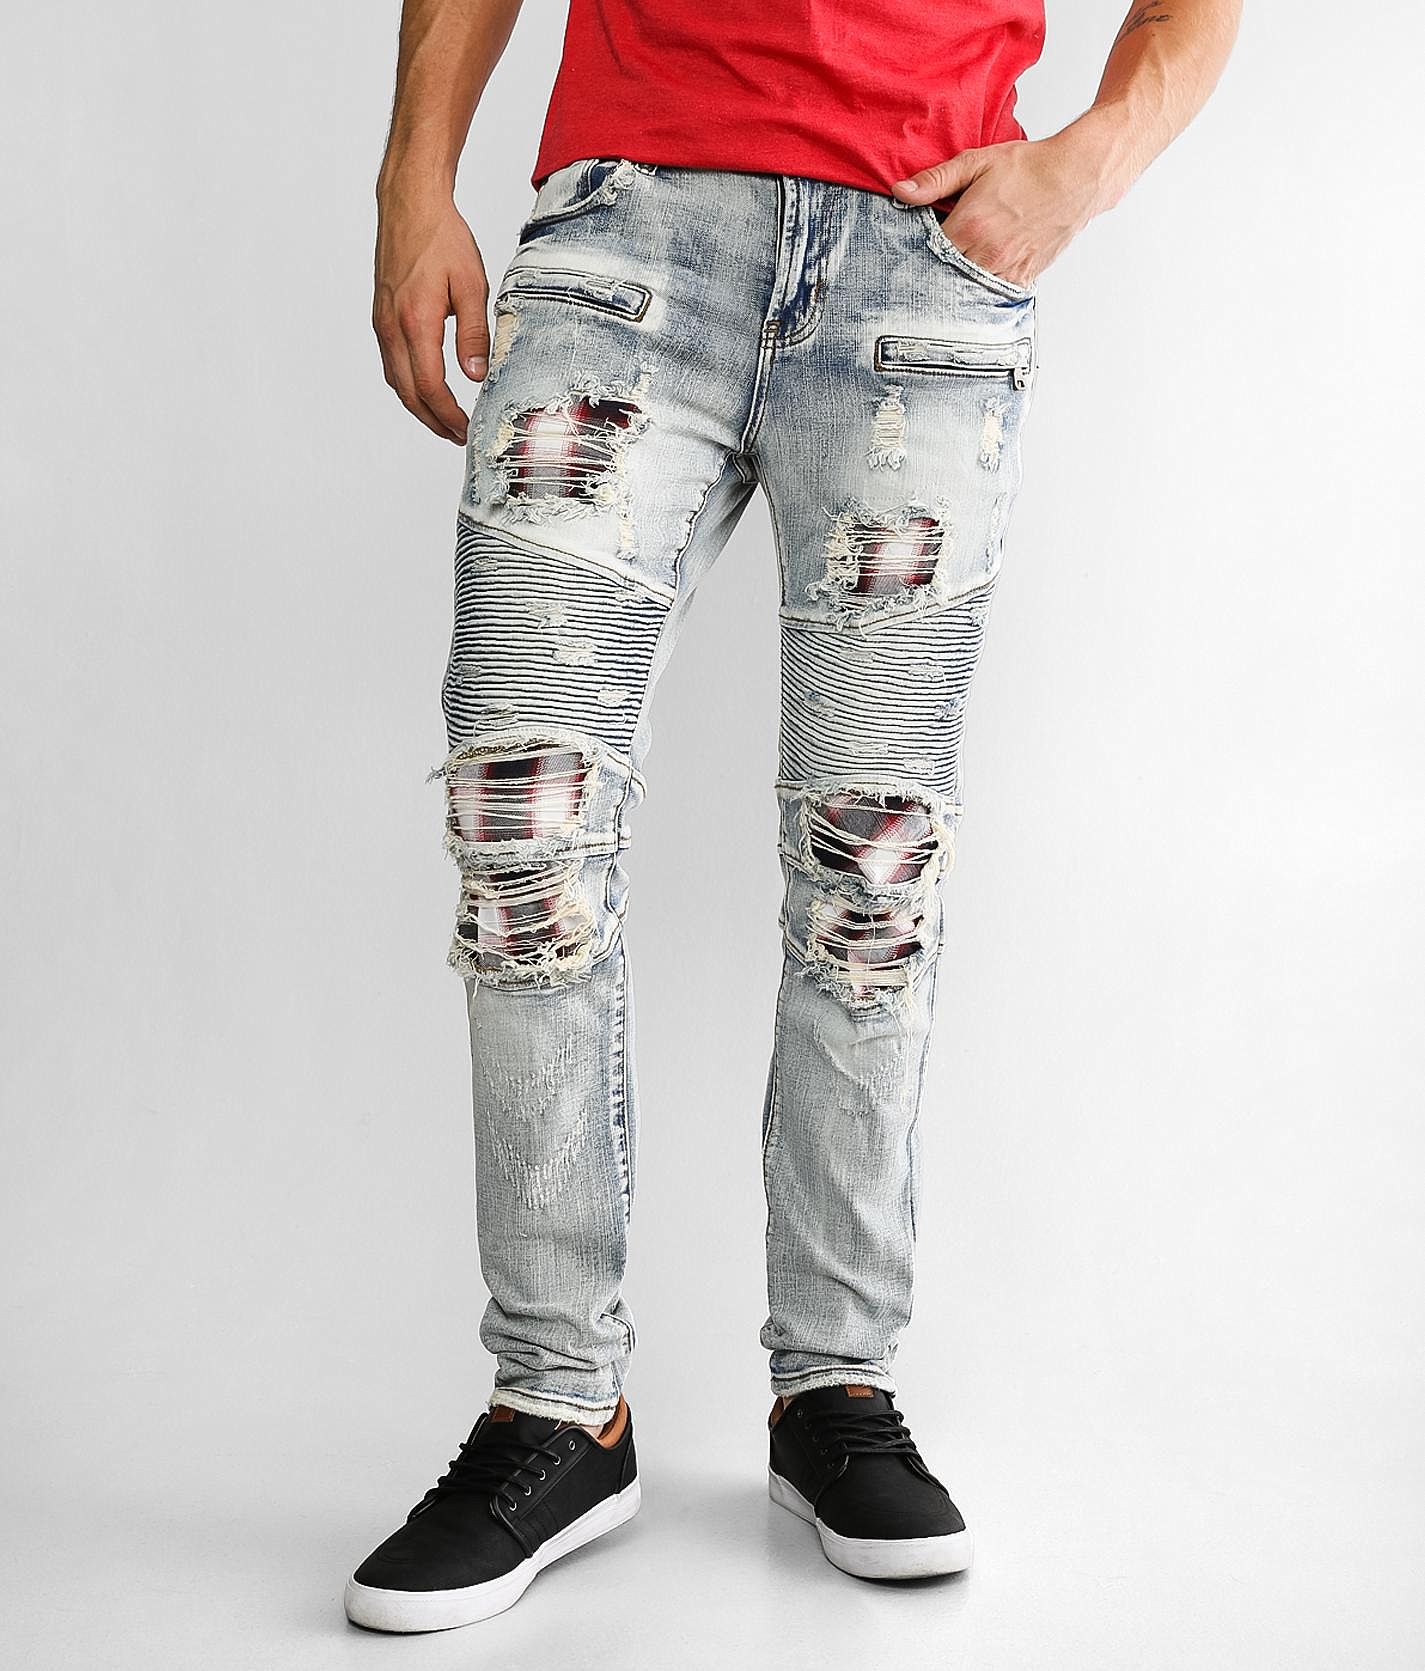 PREME Moto Skinny Stretch Buckle | Men\'s Jeans Jean - in Indigo